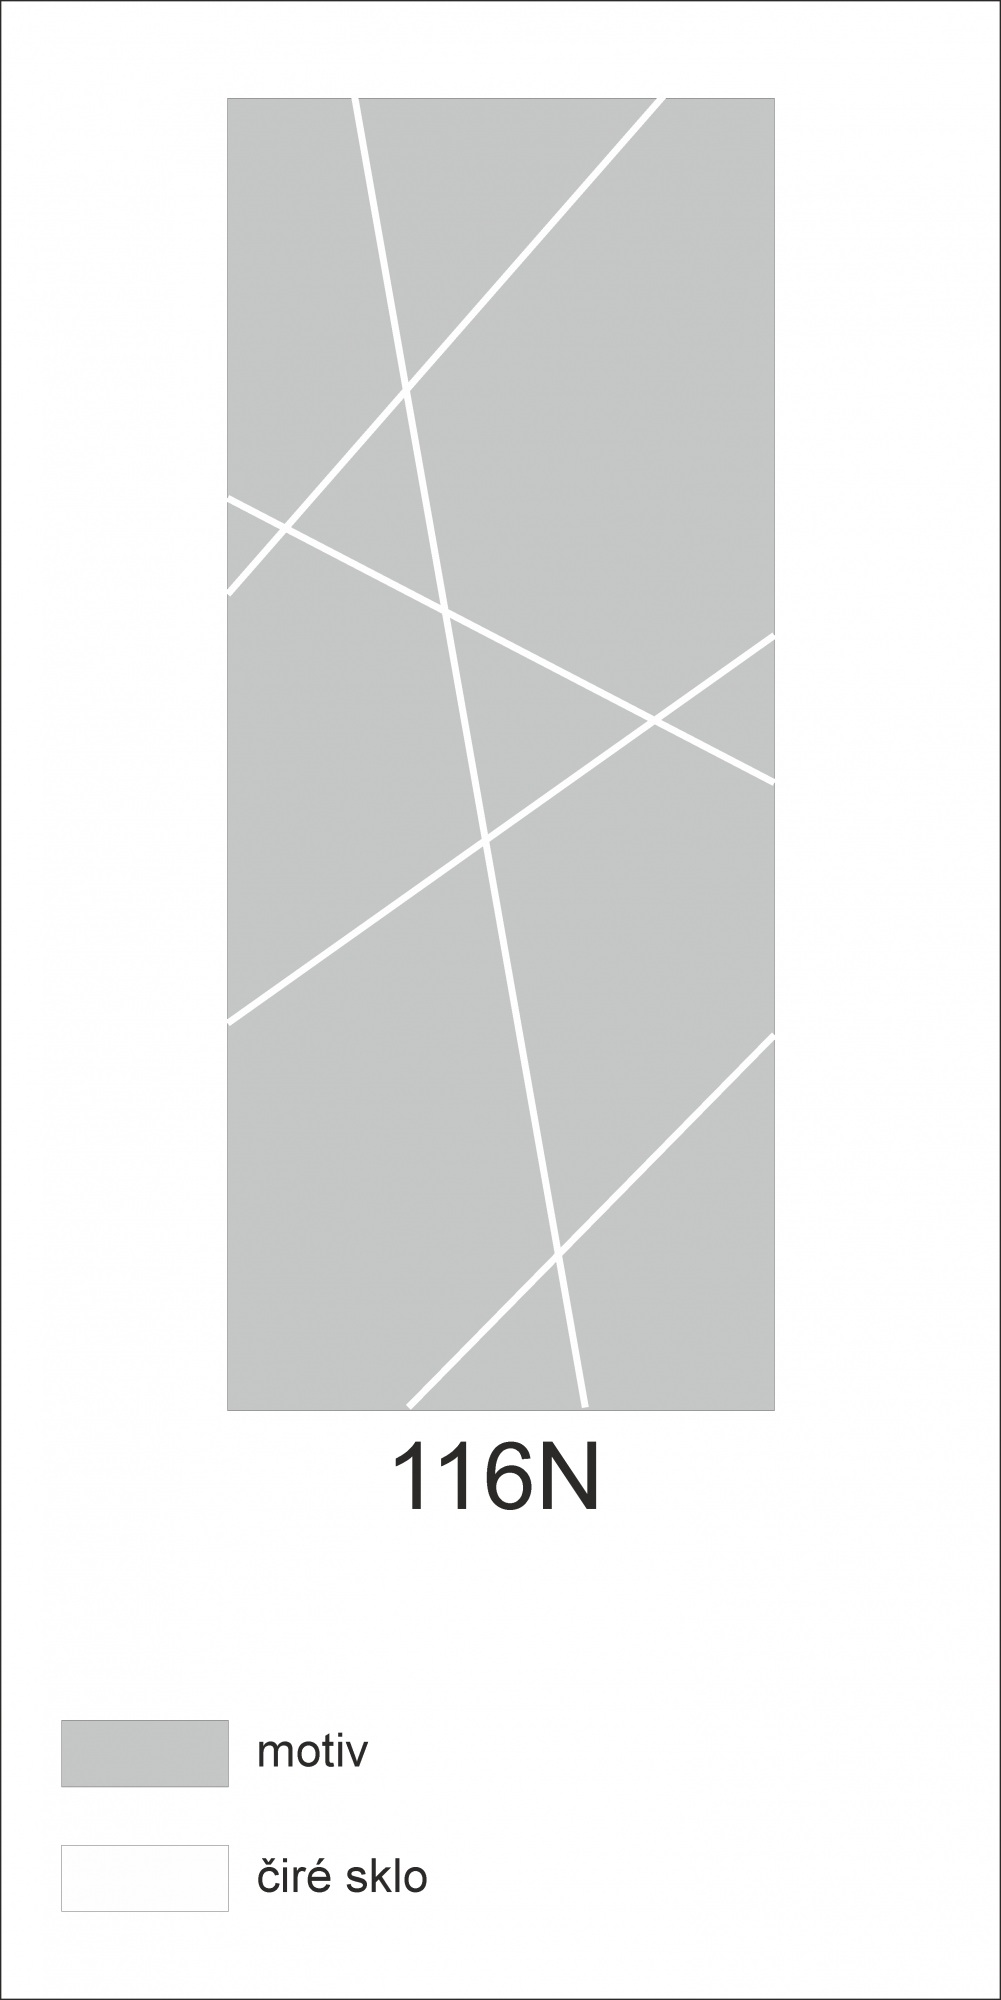 Možný motiv na skleněných dveřích nebo skleněných stěnách 116N - design čar